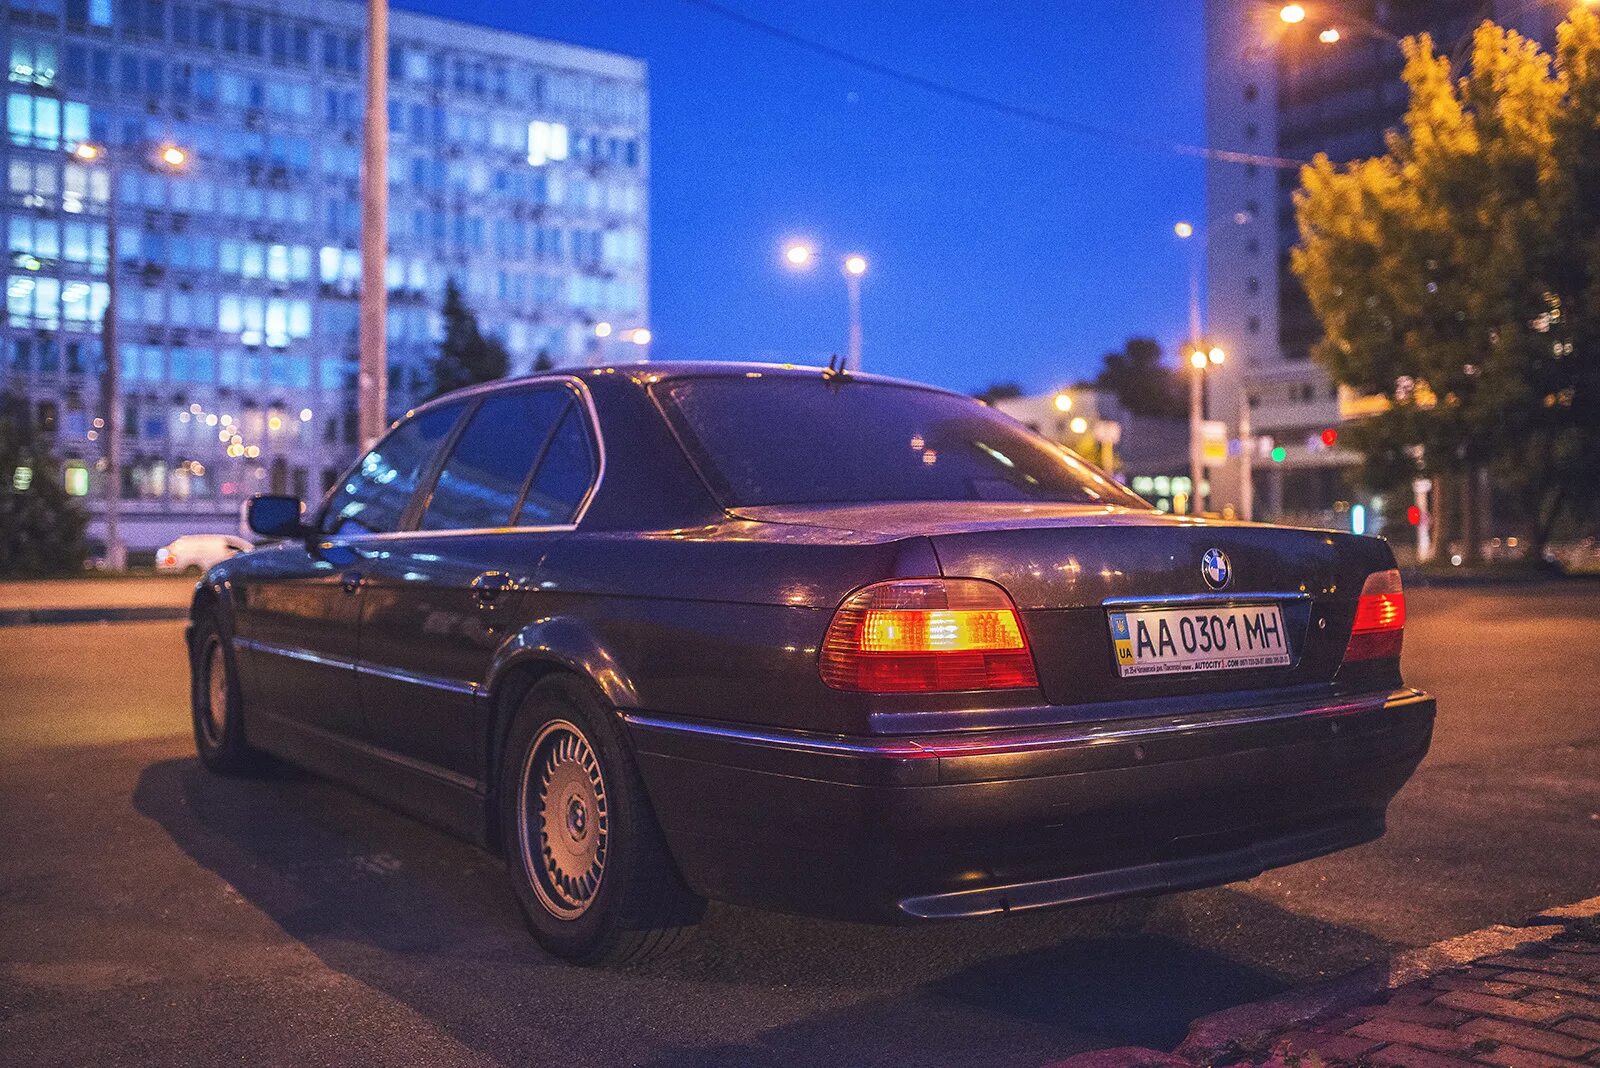 БМВ 7 е38. BMW 7 Series (e38). BMW 730 e38. BMW 7 e38 1994. Беха беха семерка